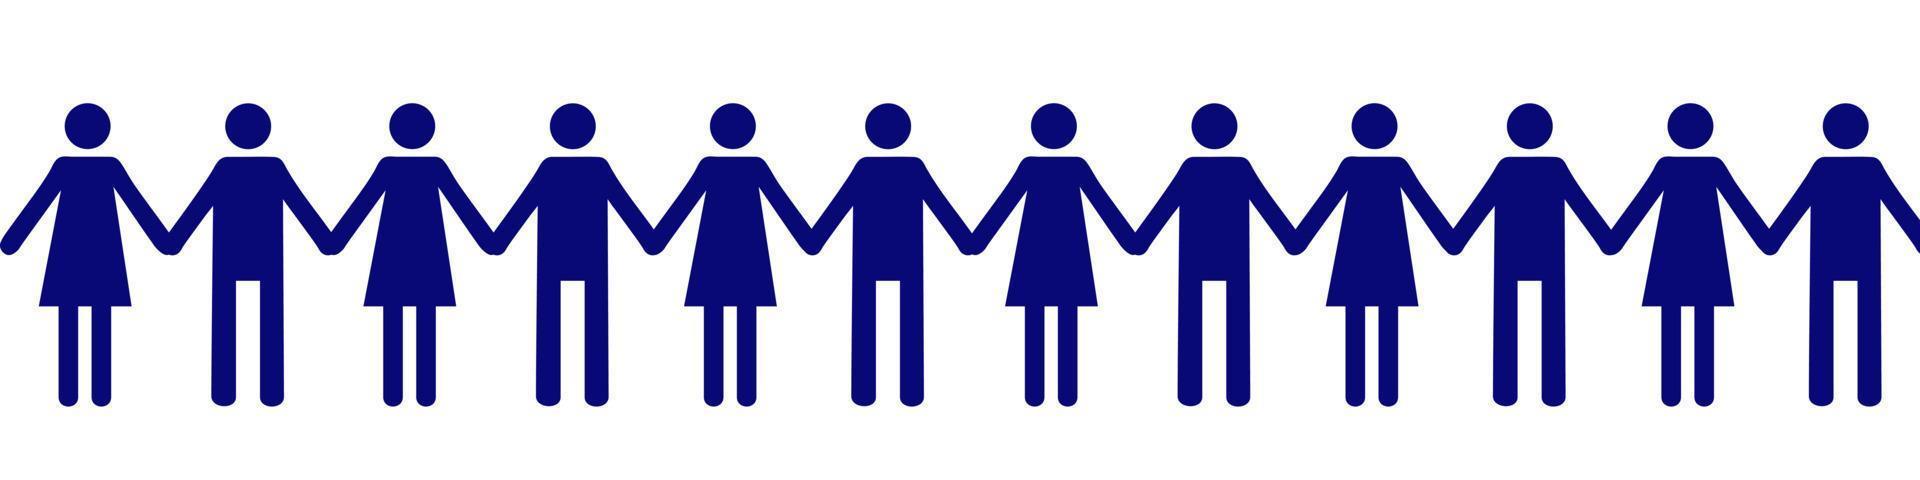 pictograma de hombres. hombres y mujeres tomados de la mano. comunidad unida de personas con los mismos intereses. icono de confianza para plantillas y diseño web vector